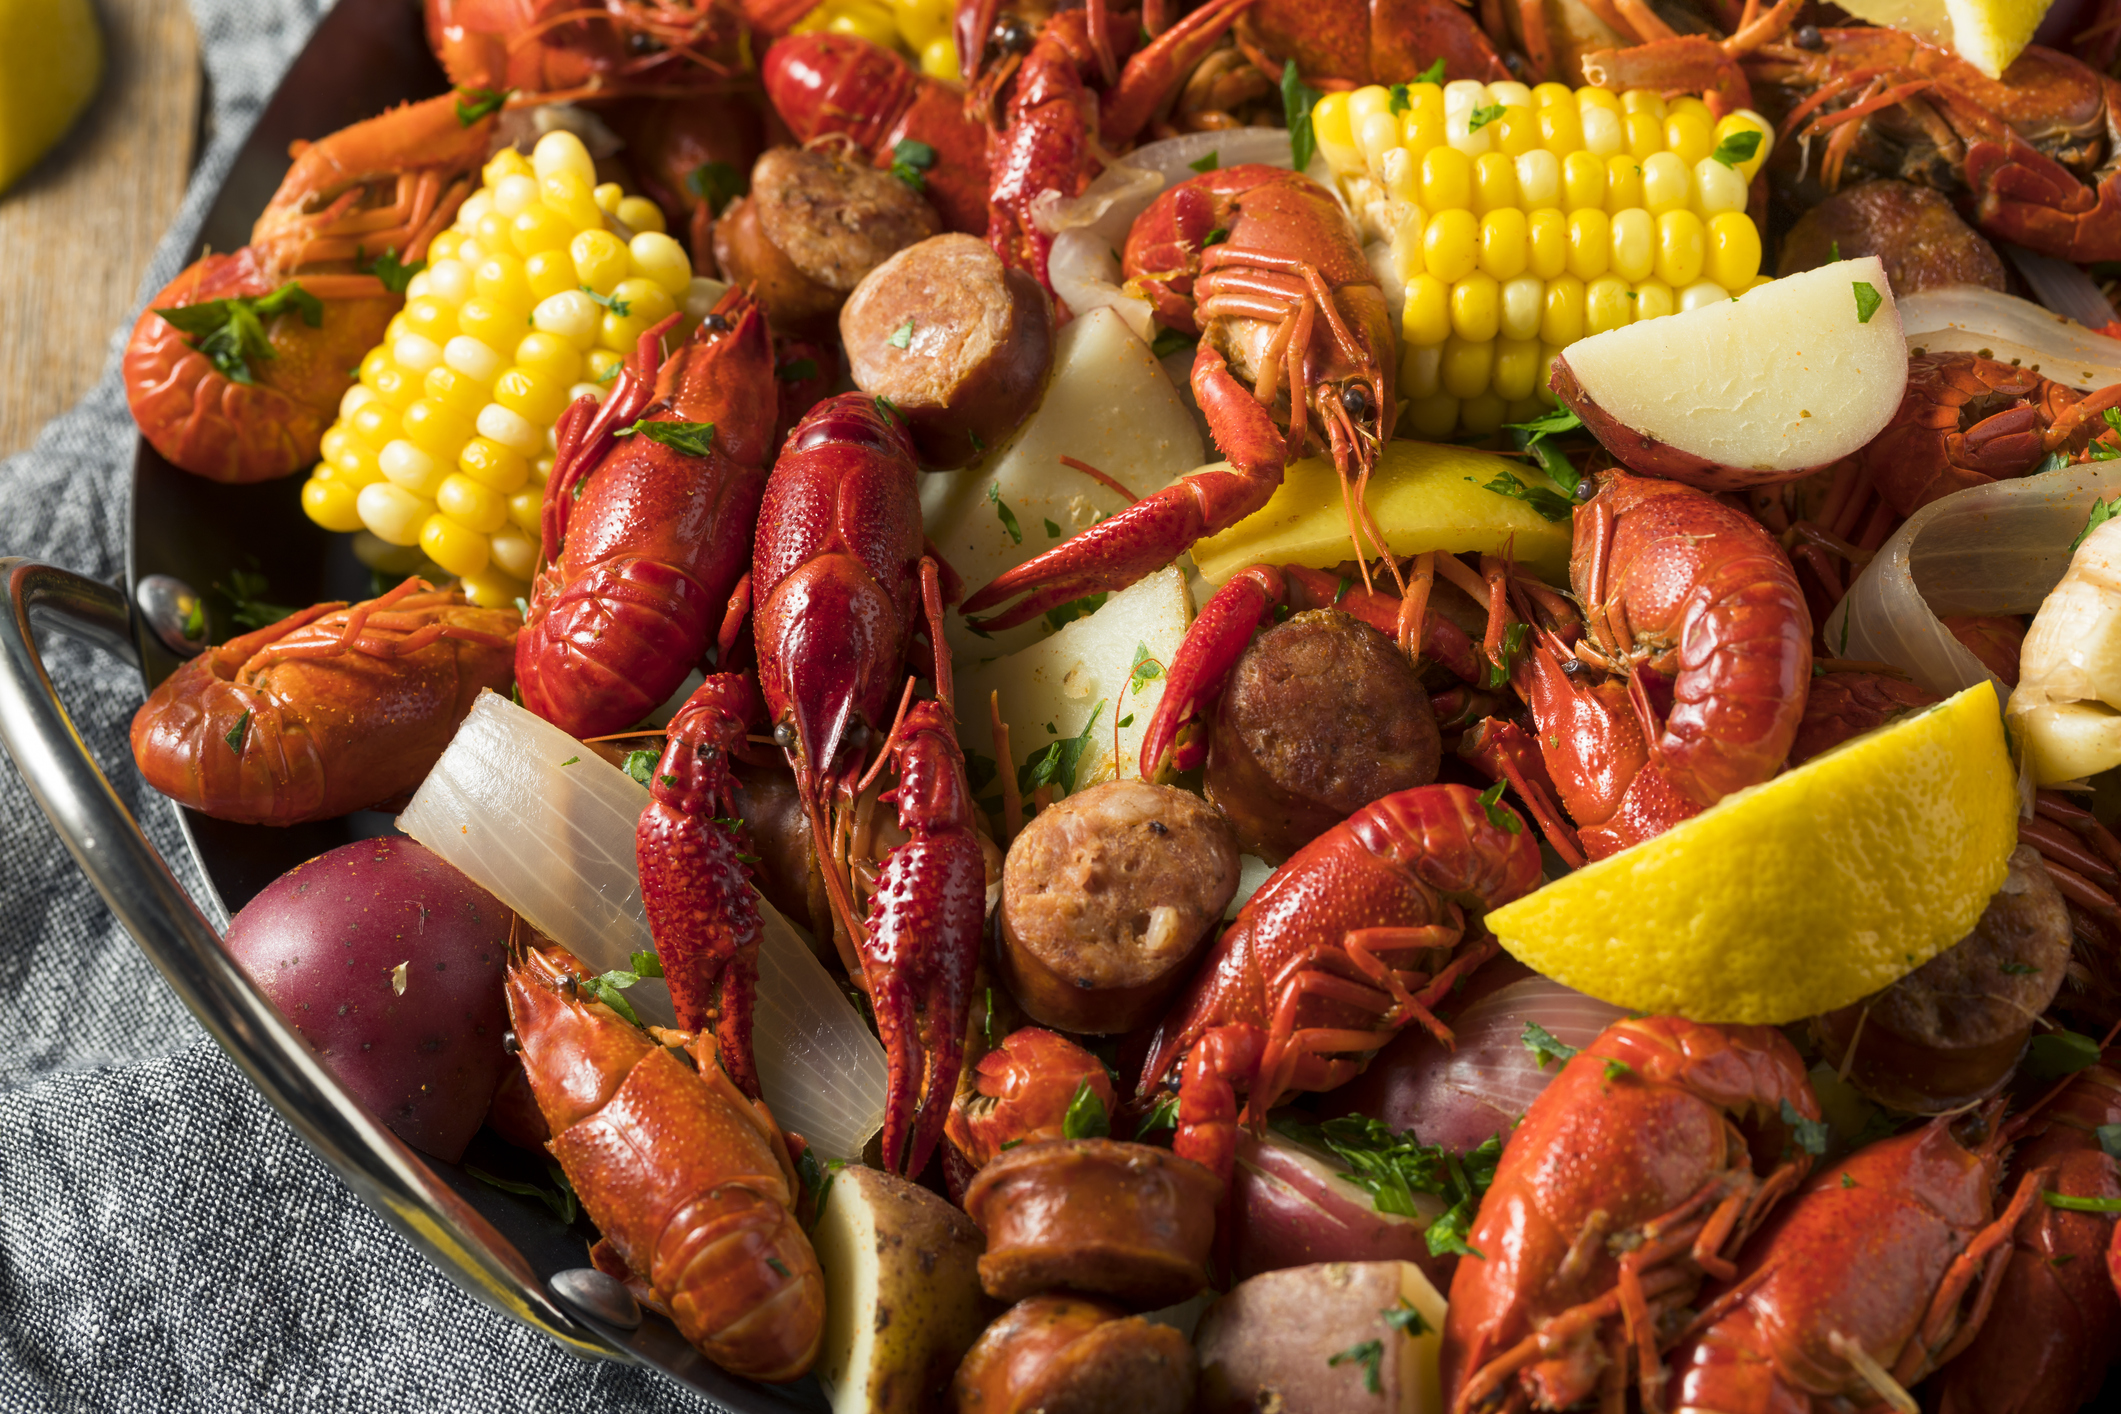 A fresh Cajun seafood bake consisting of shrimp, crayfish, sausage, corn, and potatoes.